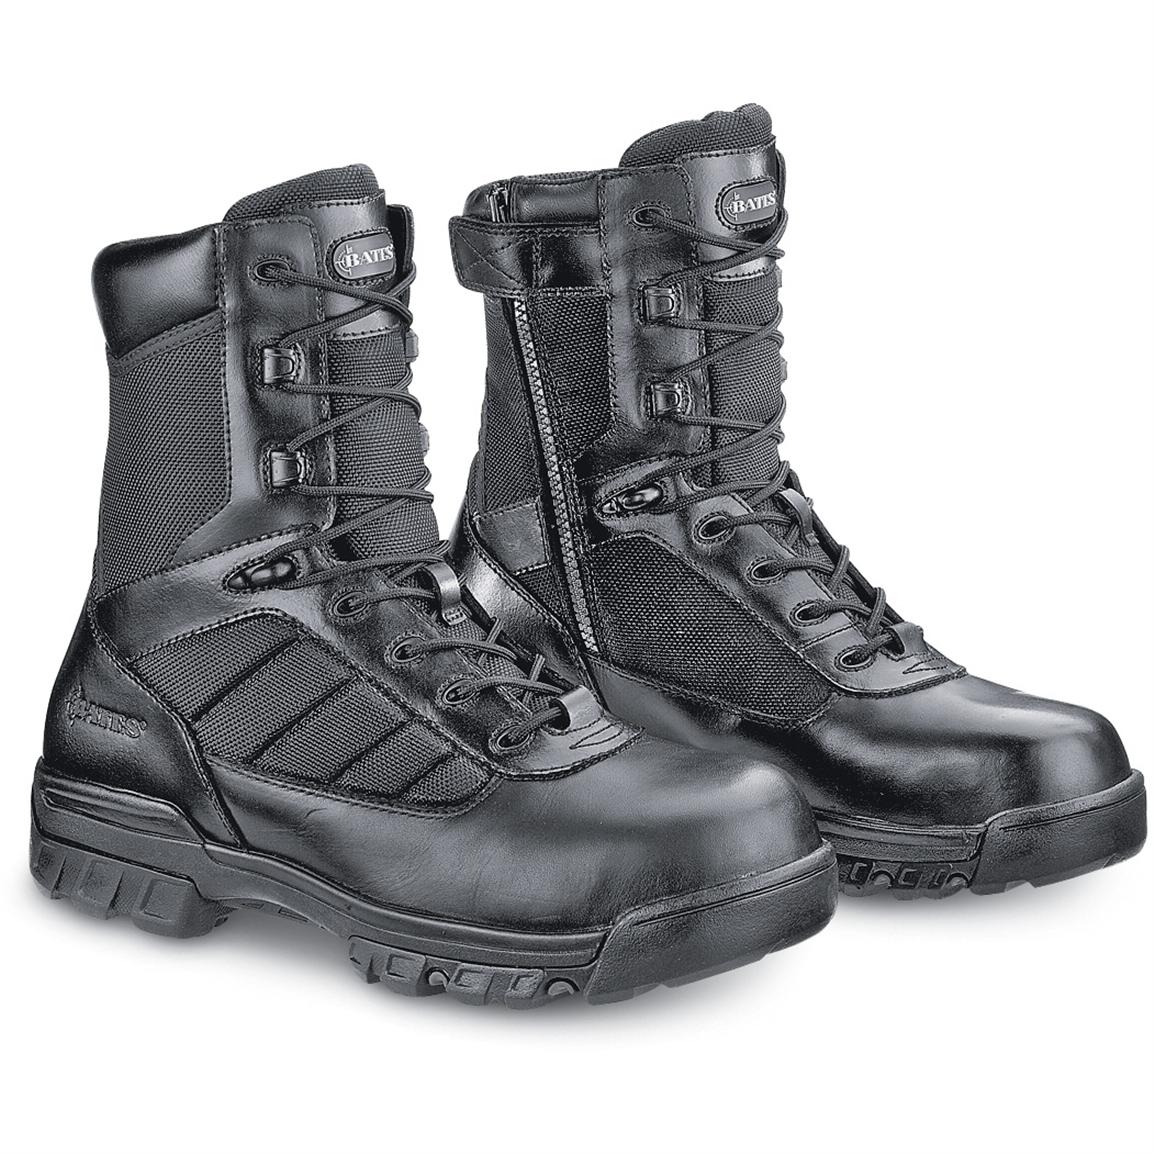 Men's Bates® 8" Tactical Boots, Black - 96000, Combat & Tactical Boots